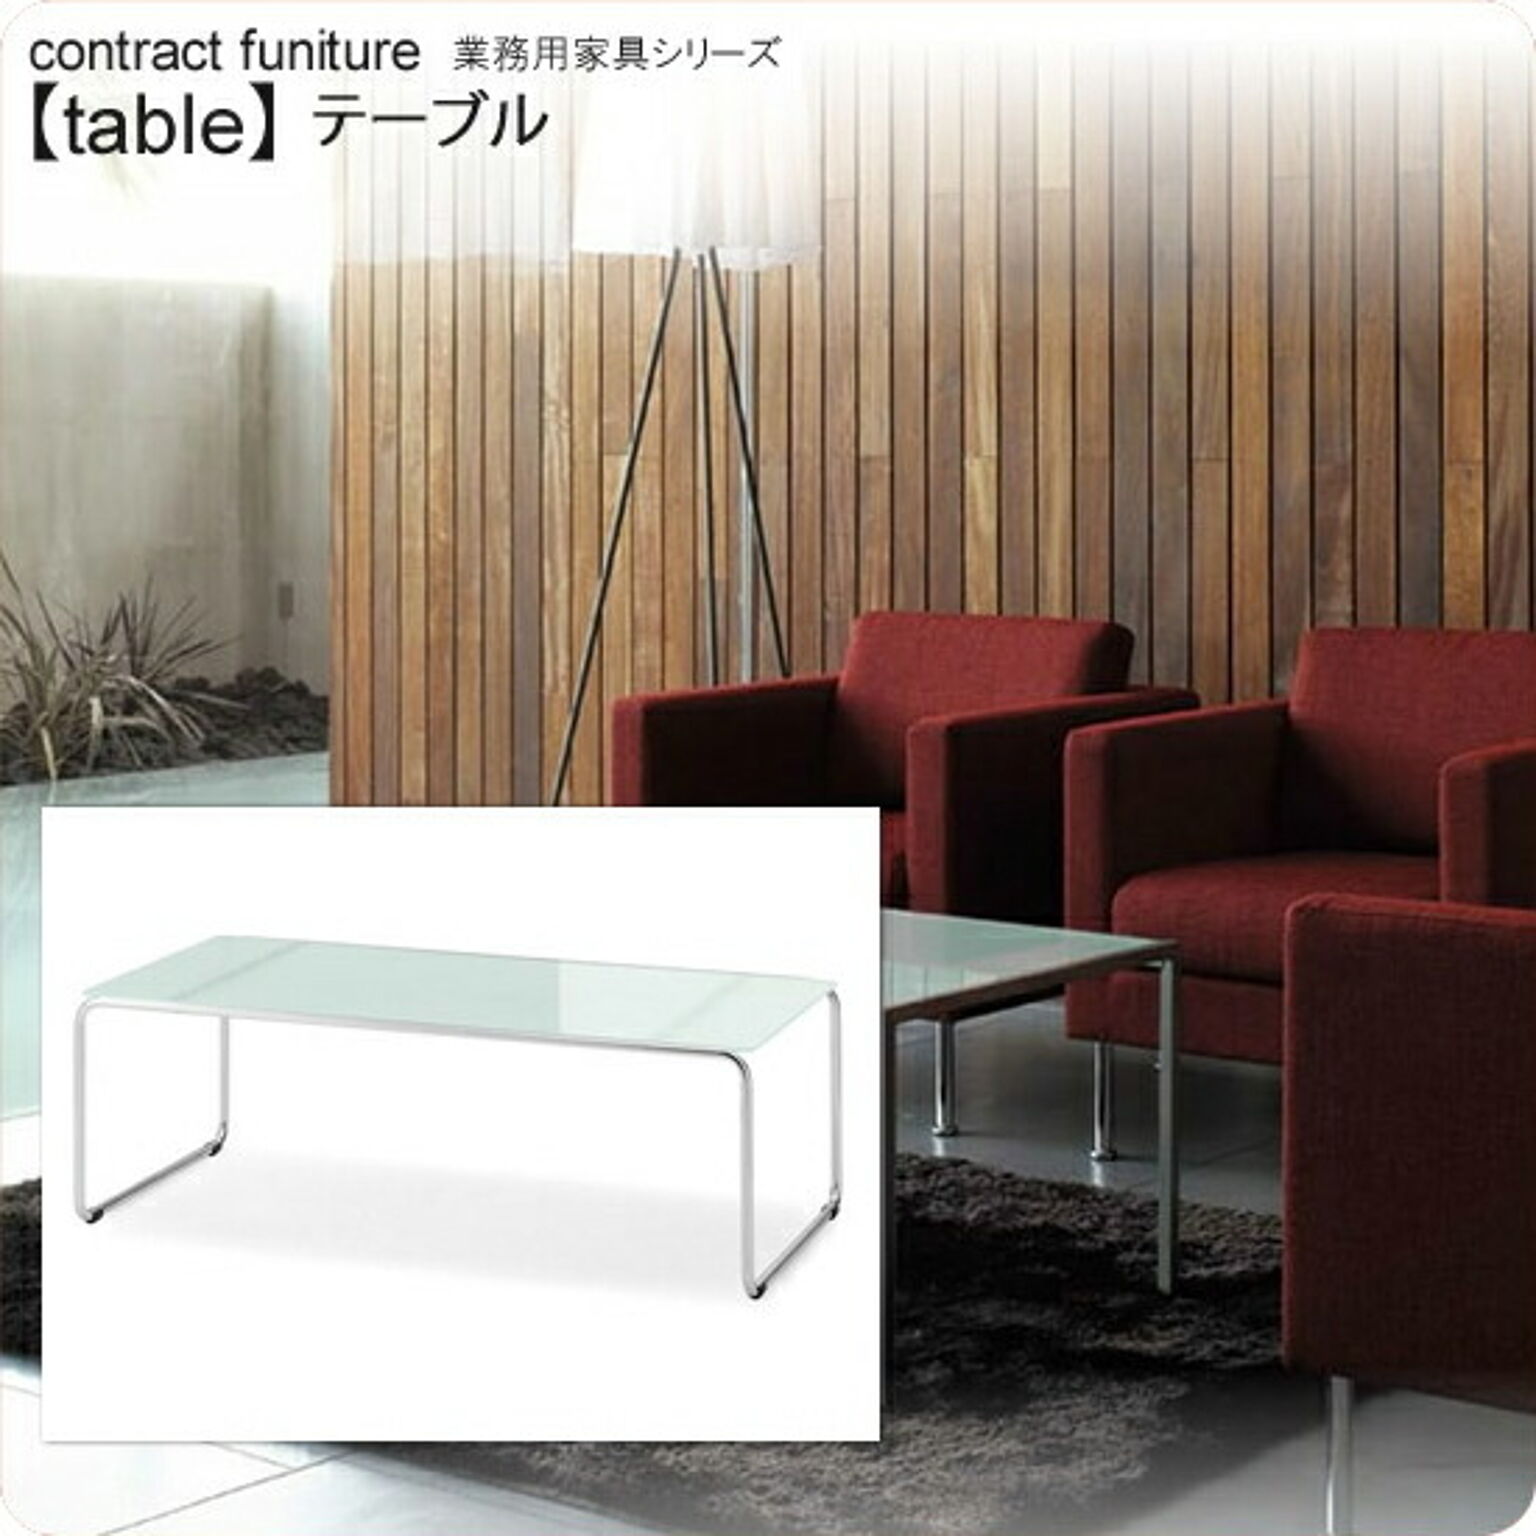 フロスト仕上げ強化ガラス製ラウンジテーブル 1200x600x400 ループ脚 業務用家具 tableシリーズ